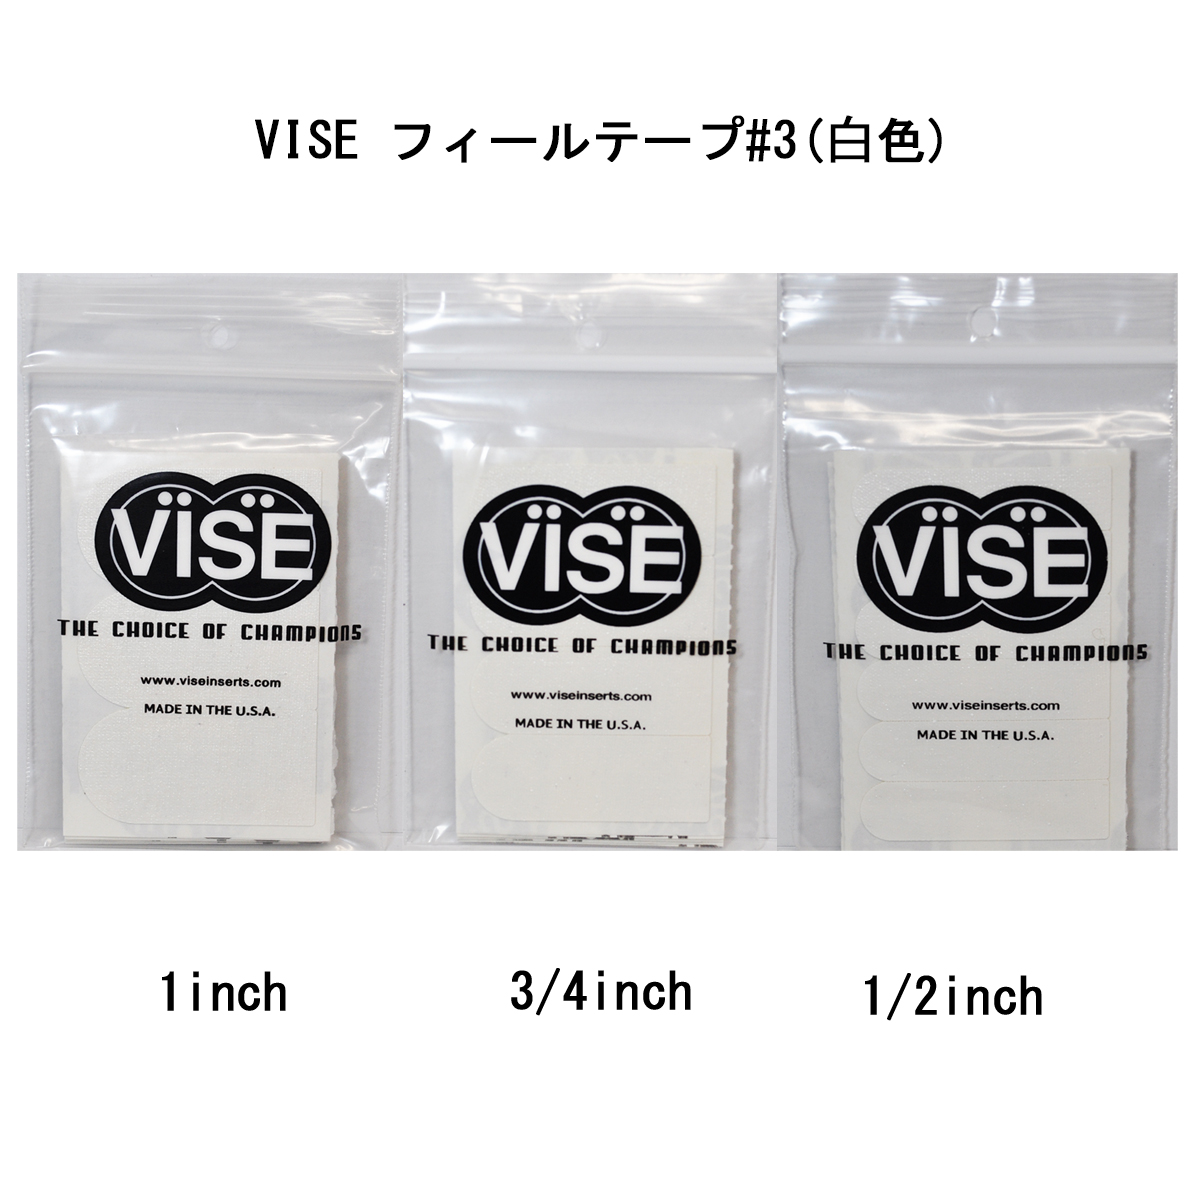 【12袋セット】VISE フィールテープ#3(白色) - ウインドウを閉じる